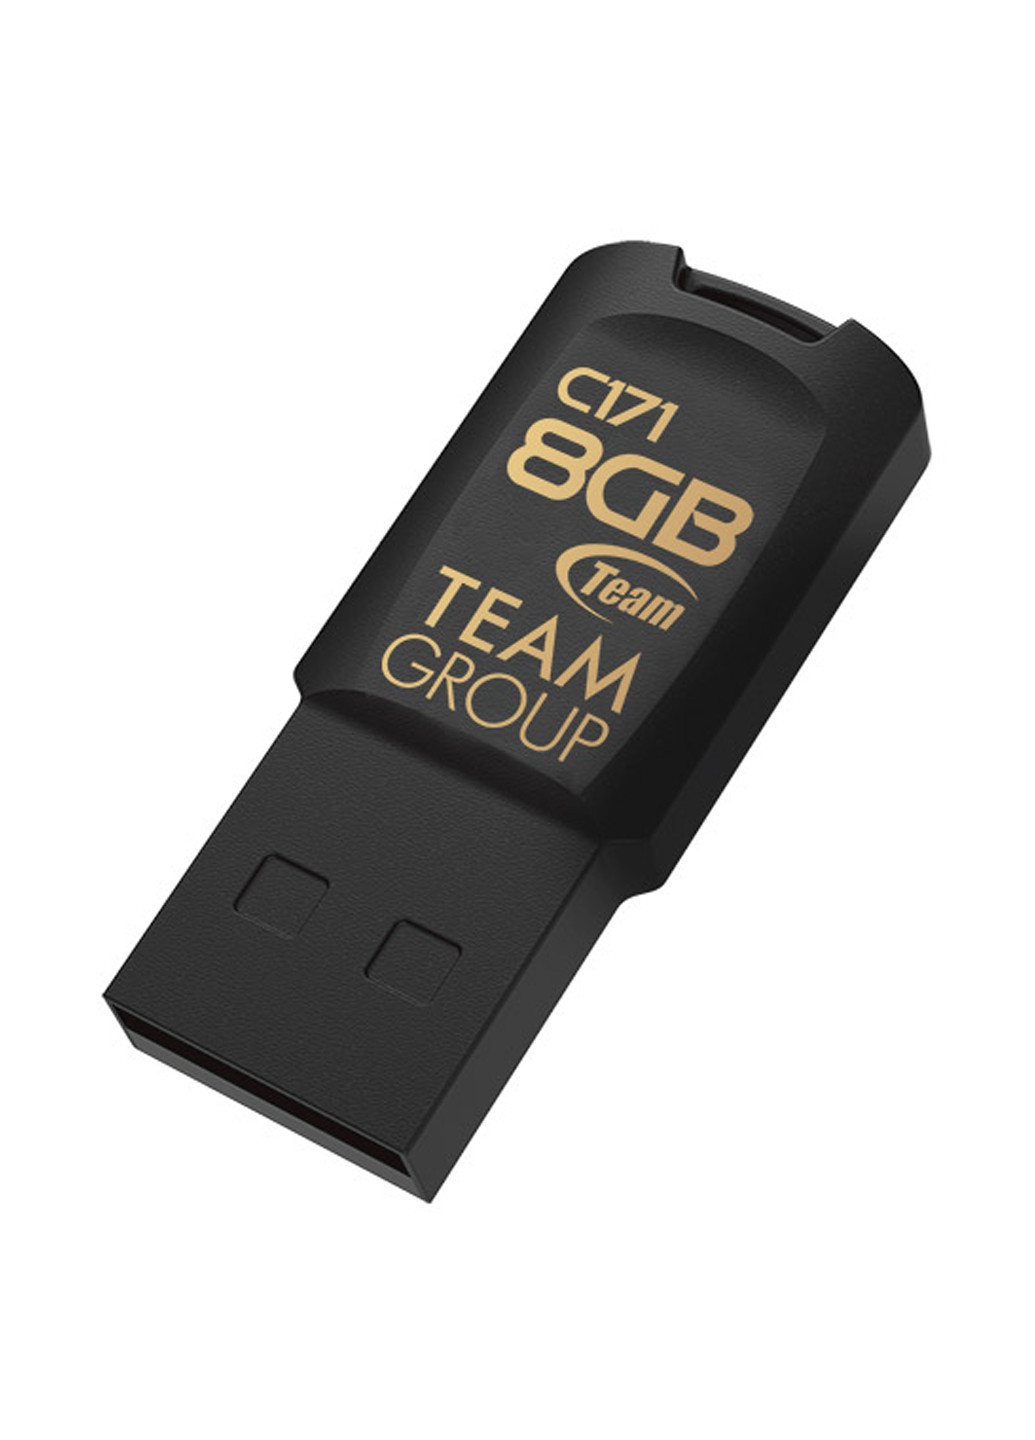 Флеш пам'ять USB C171 8GB Black (TC1718GB01) Team флеш память usb team c171 8gb black (tc1718gb01) (134201650)